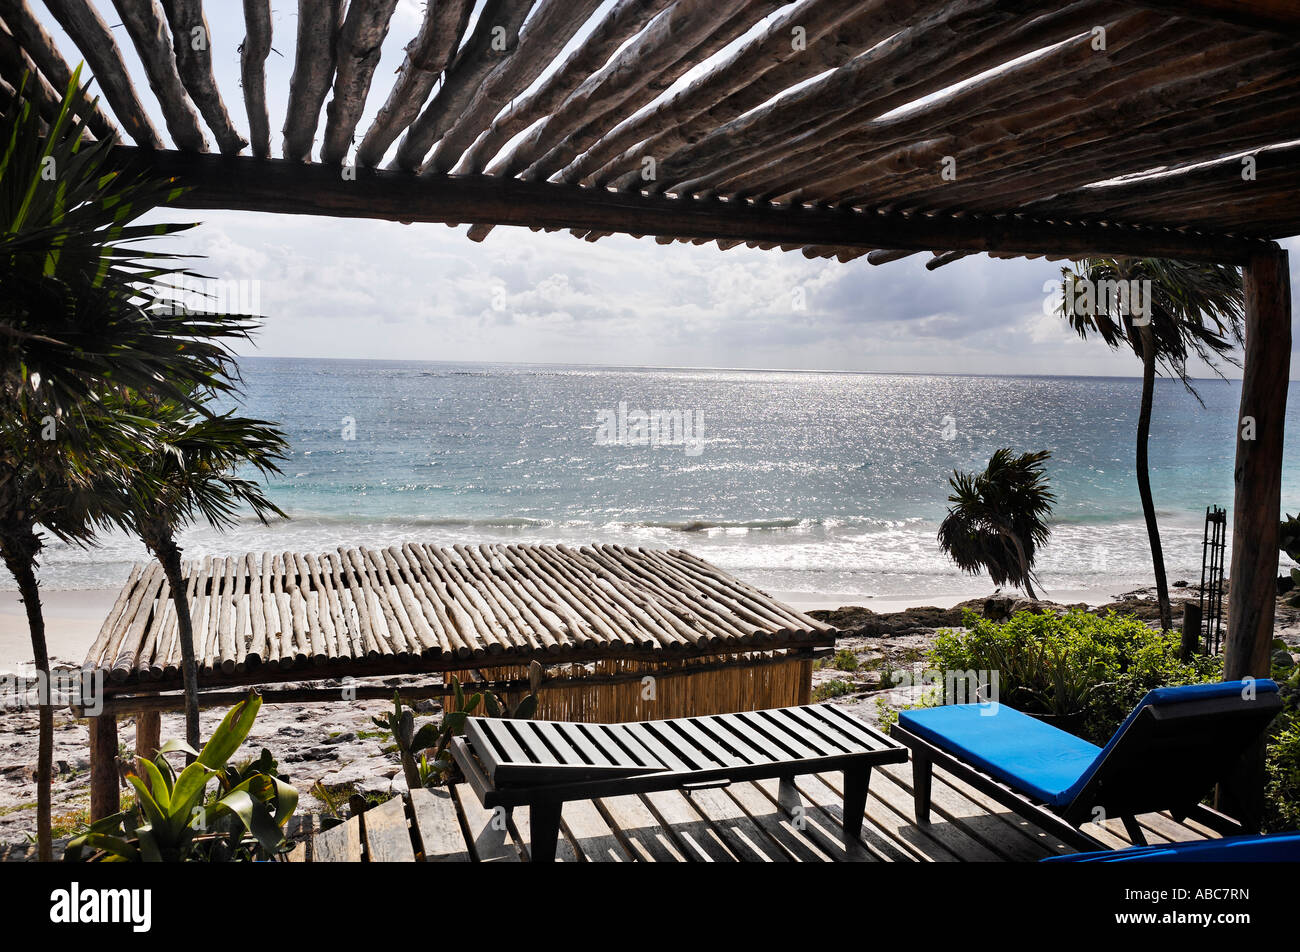 Terraza de una cabaña con vista a la hermosa playa de arena blanca de Tulum en Yucatán, México Foto de stock